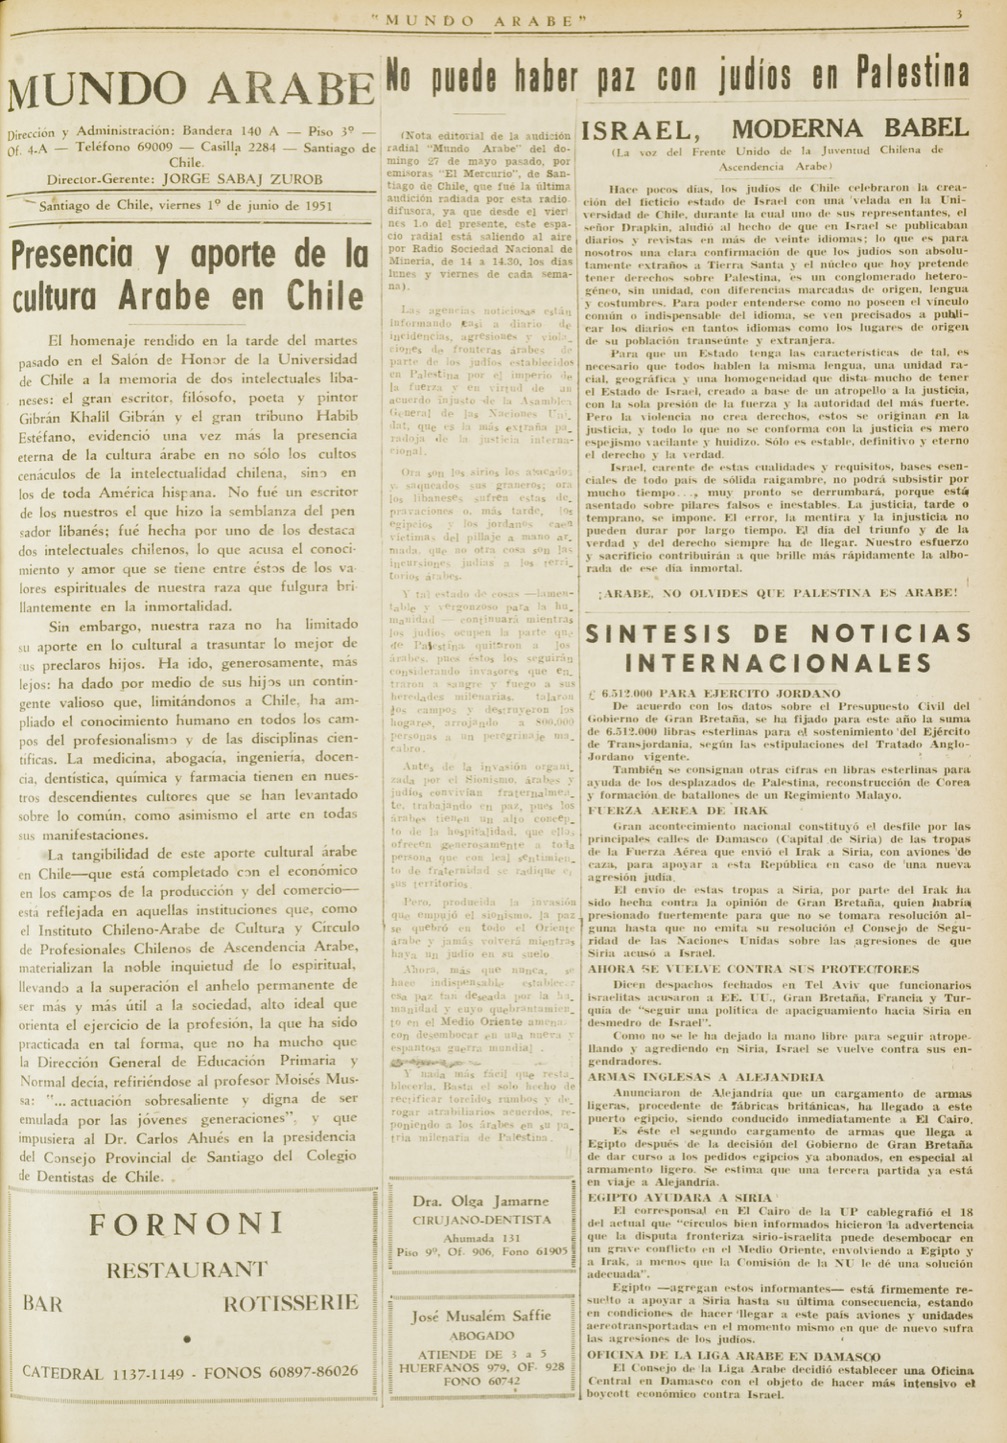 "Presentia y aporte de la cultura Arabe en Chile", Mundo Árabe, Jun 1, 1951, p. 3.